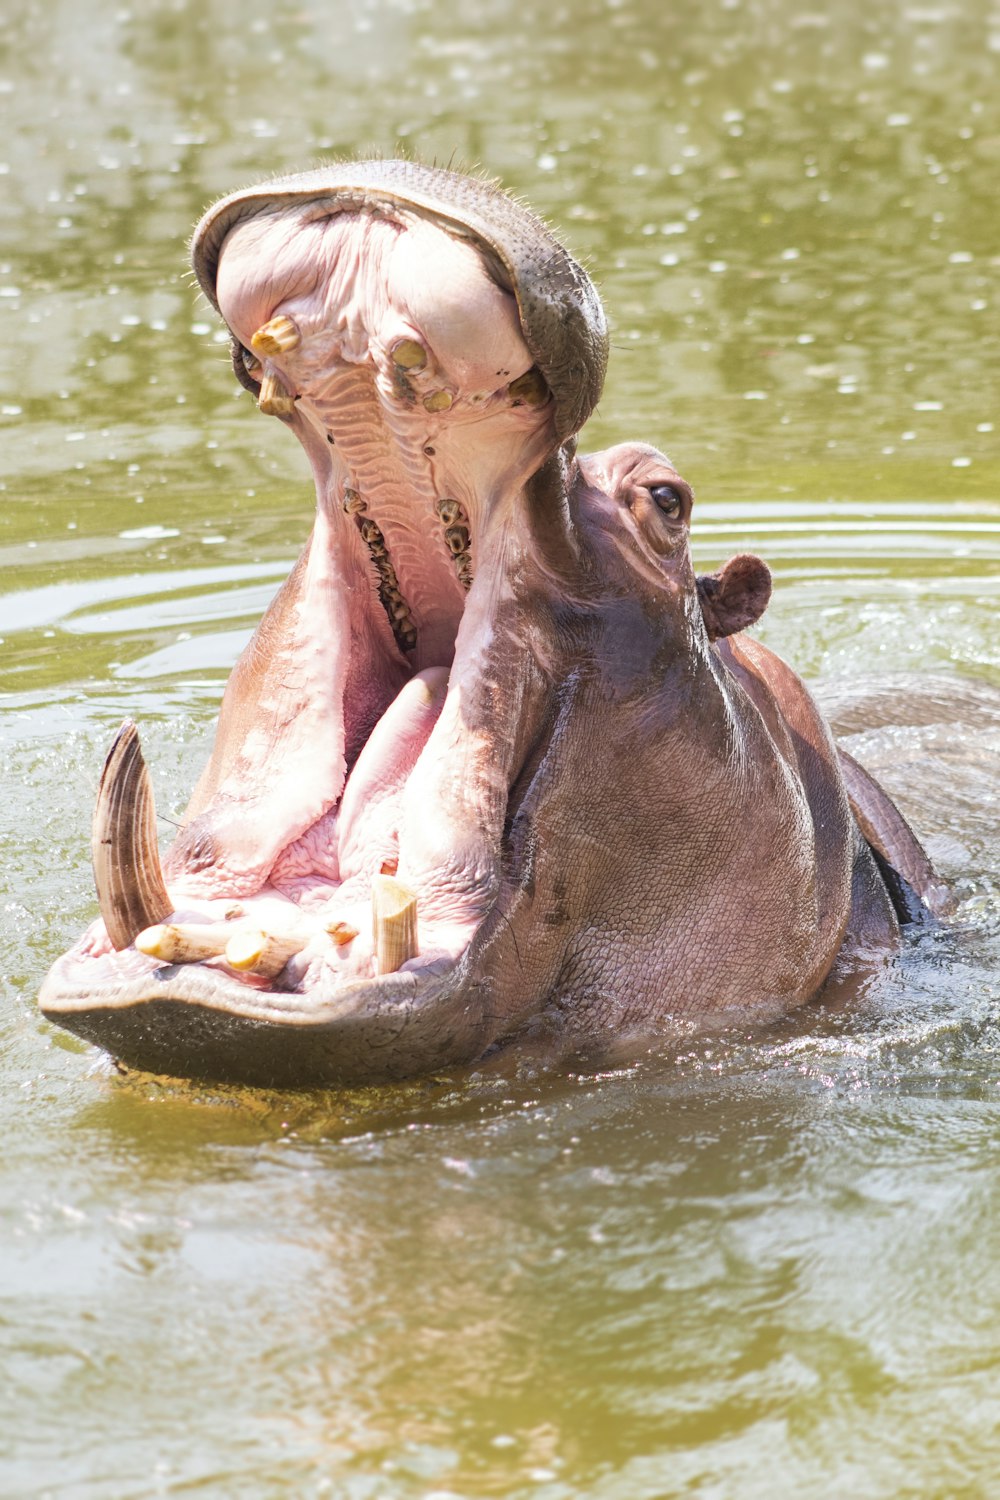 um hipopótamo em um corpo de água com a boca aberta